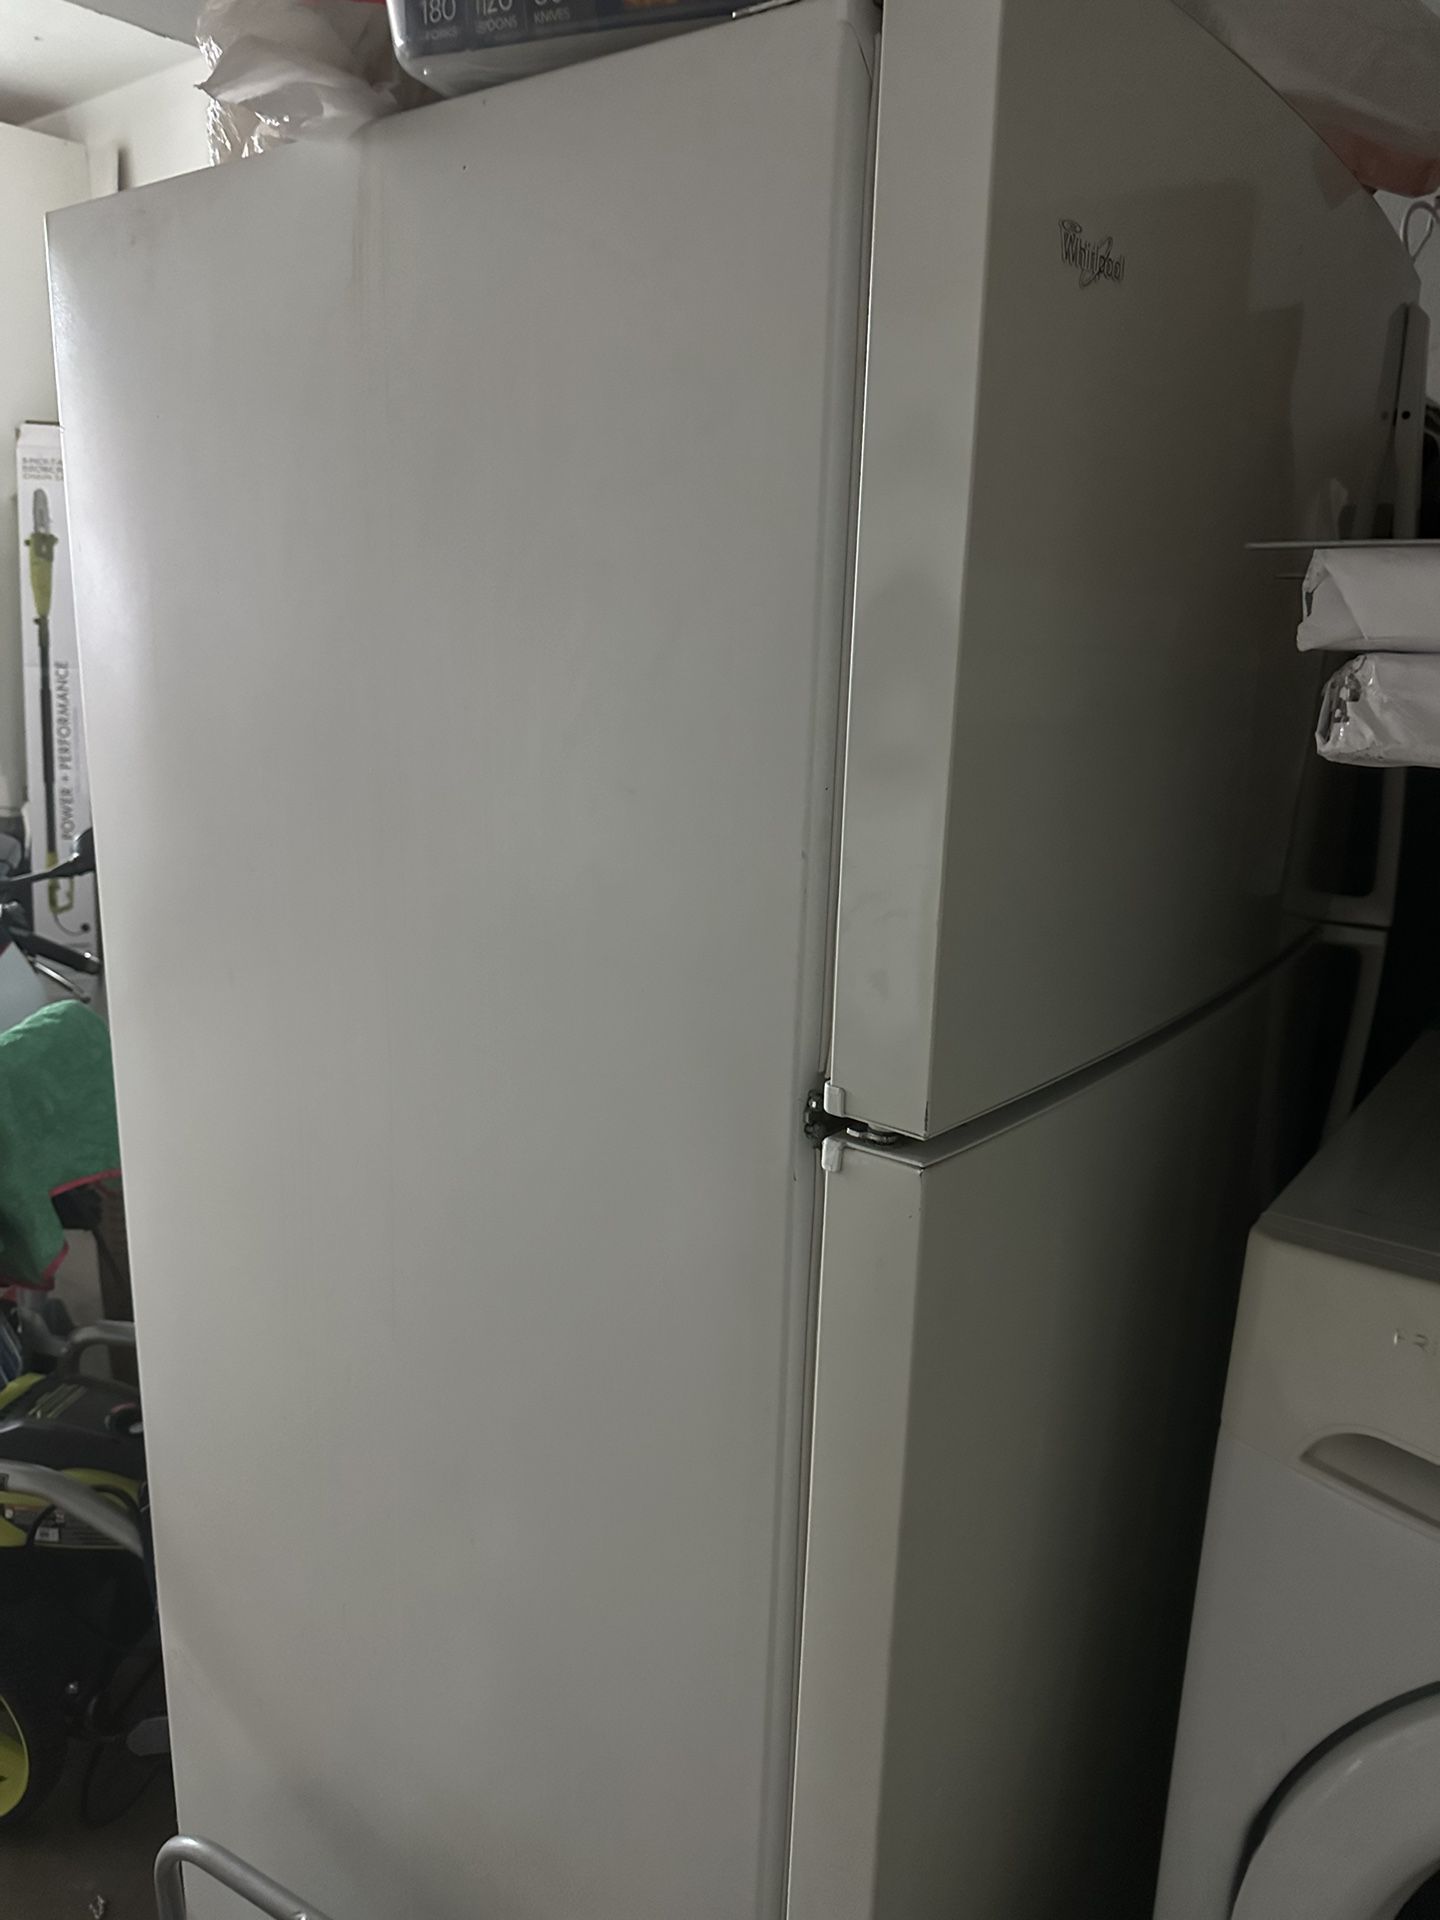 FREE Whirlpool Refrigerator